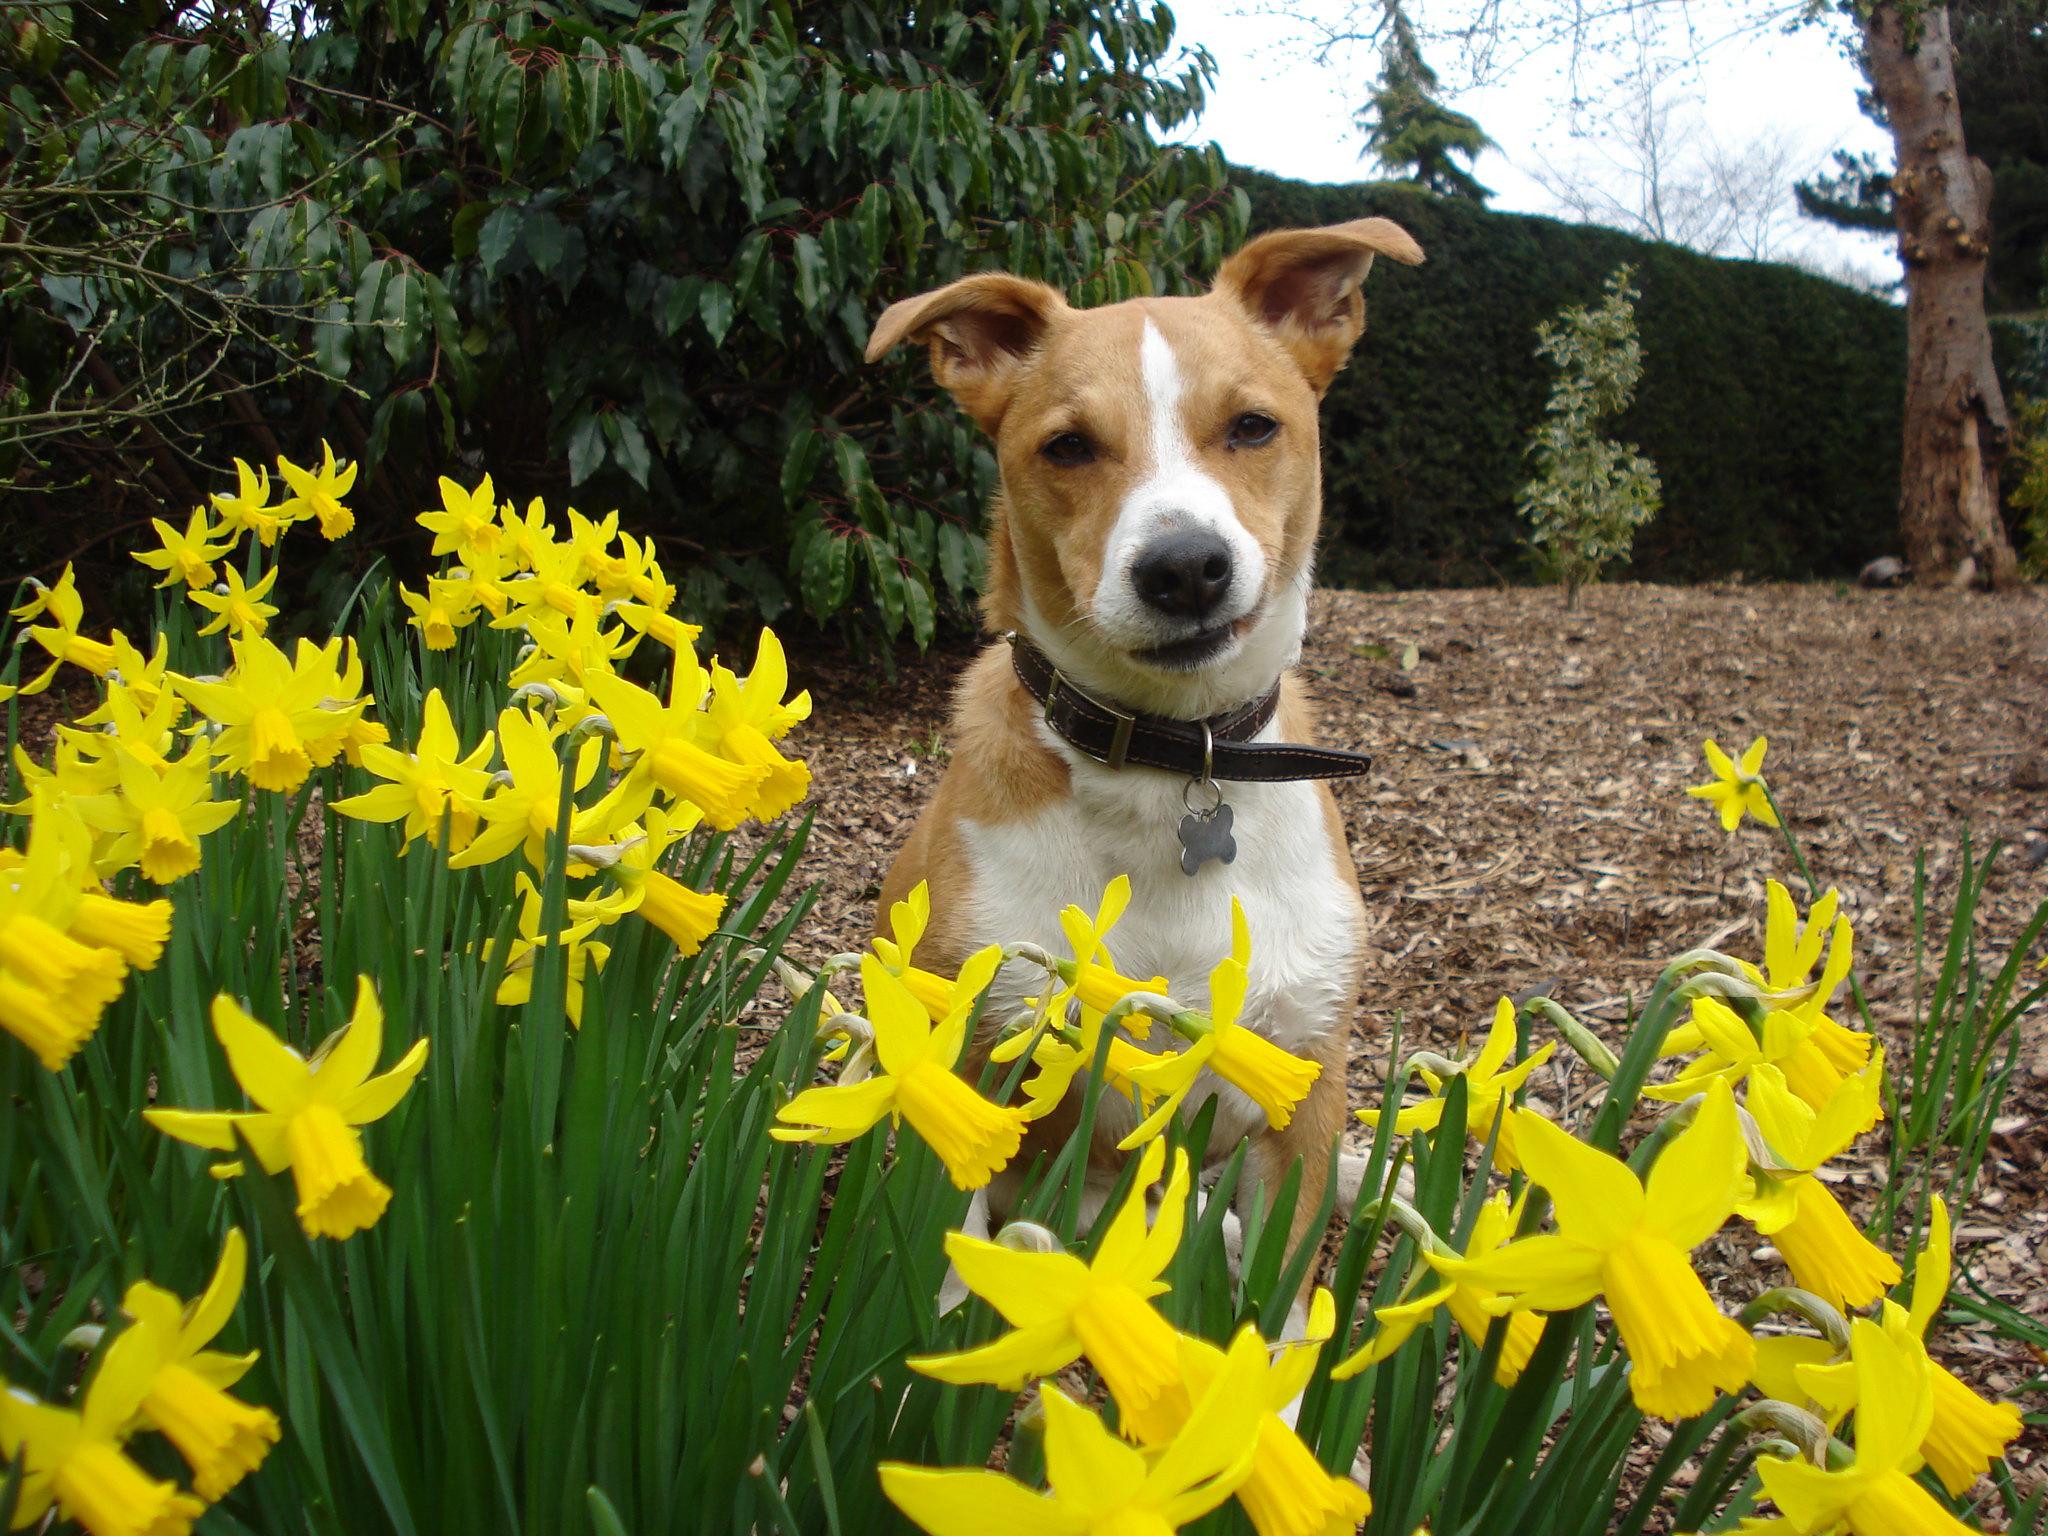 “Daffodils are a no, right?”